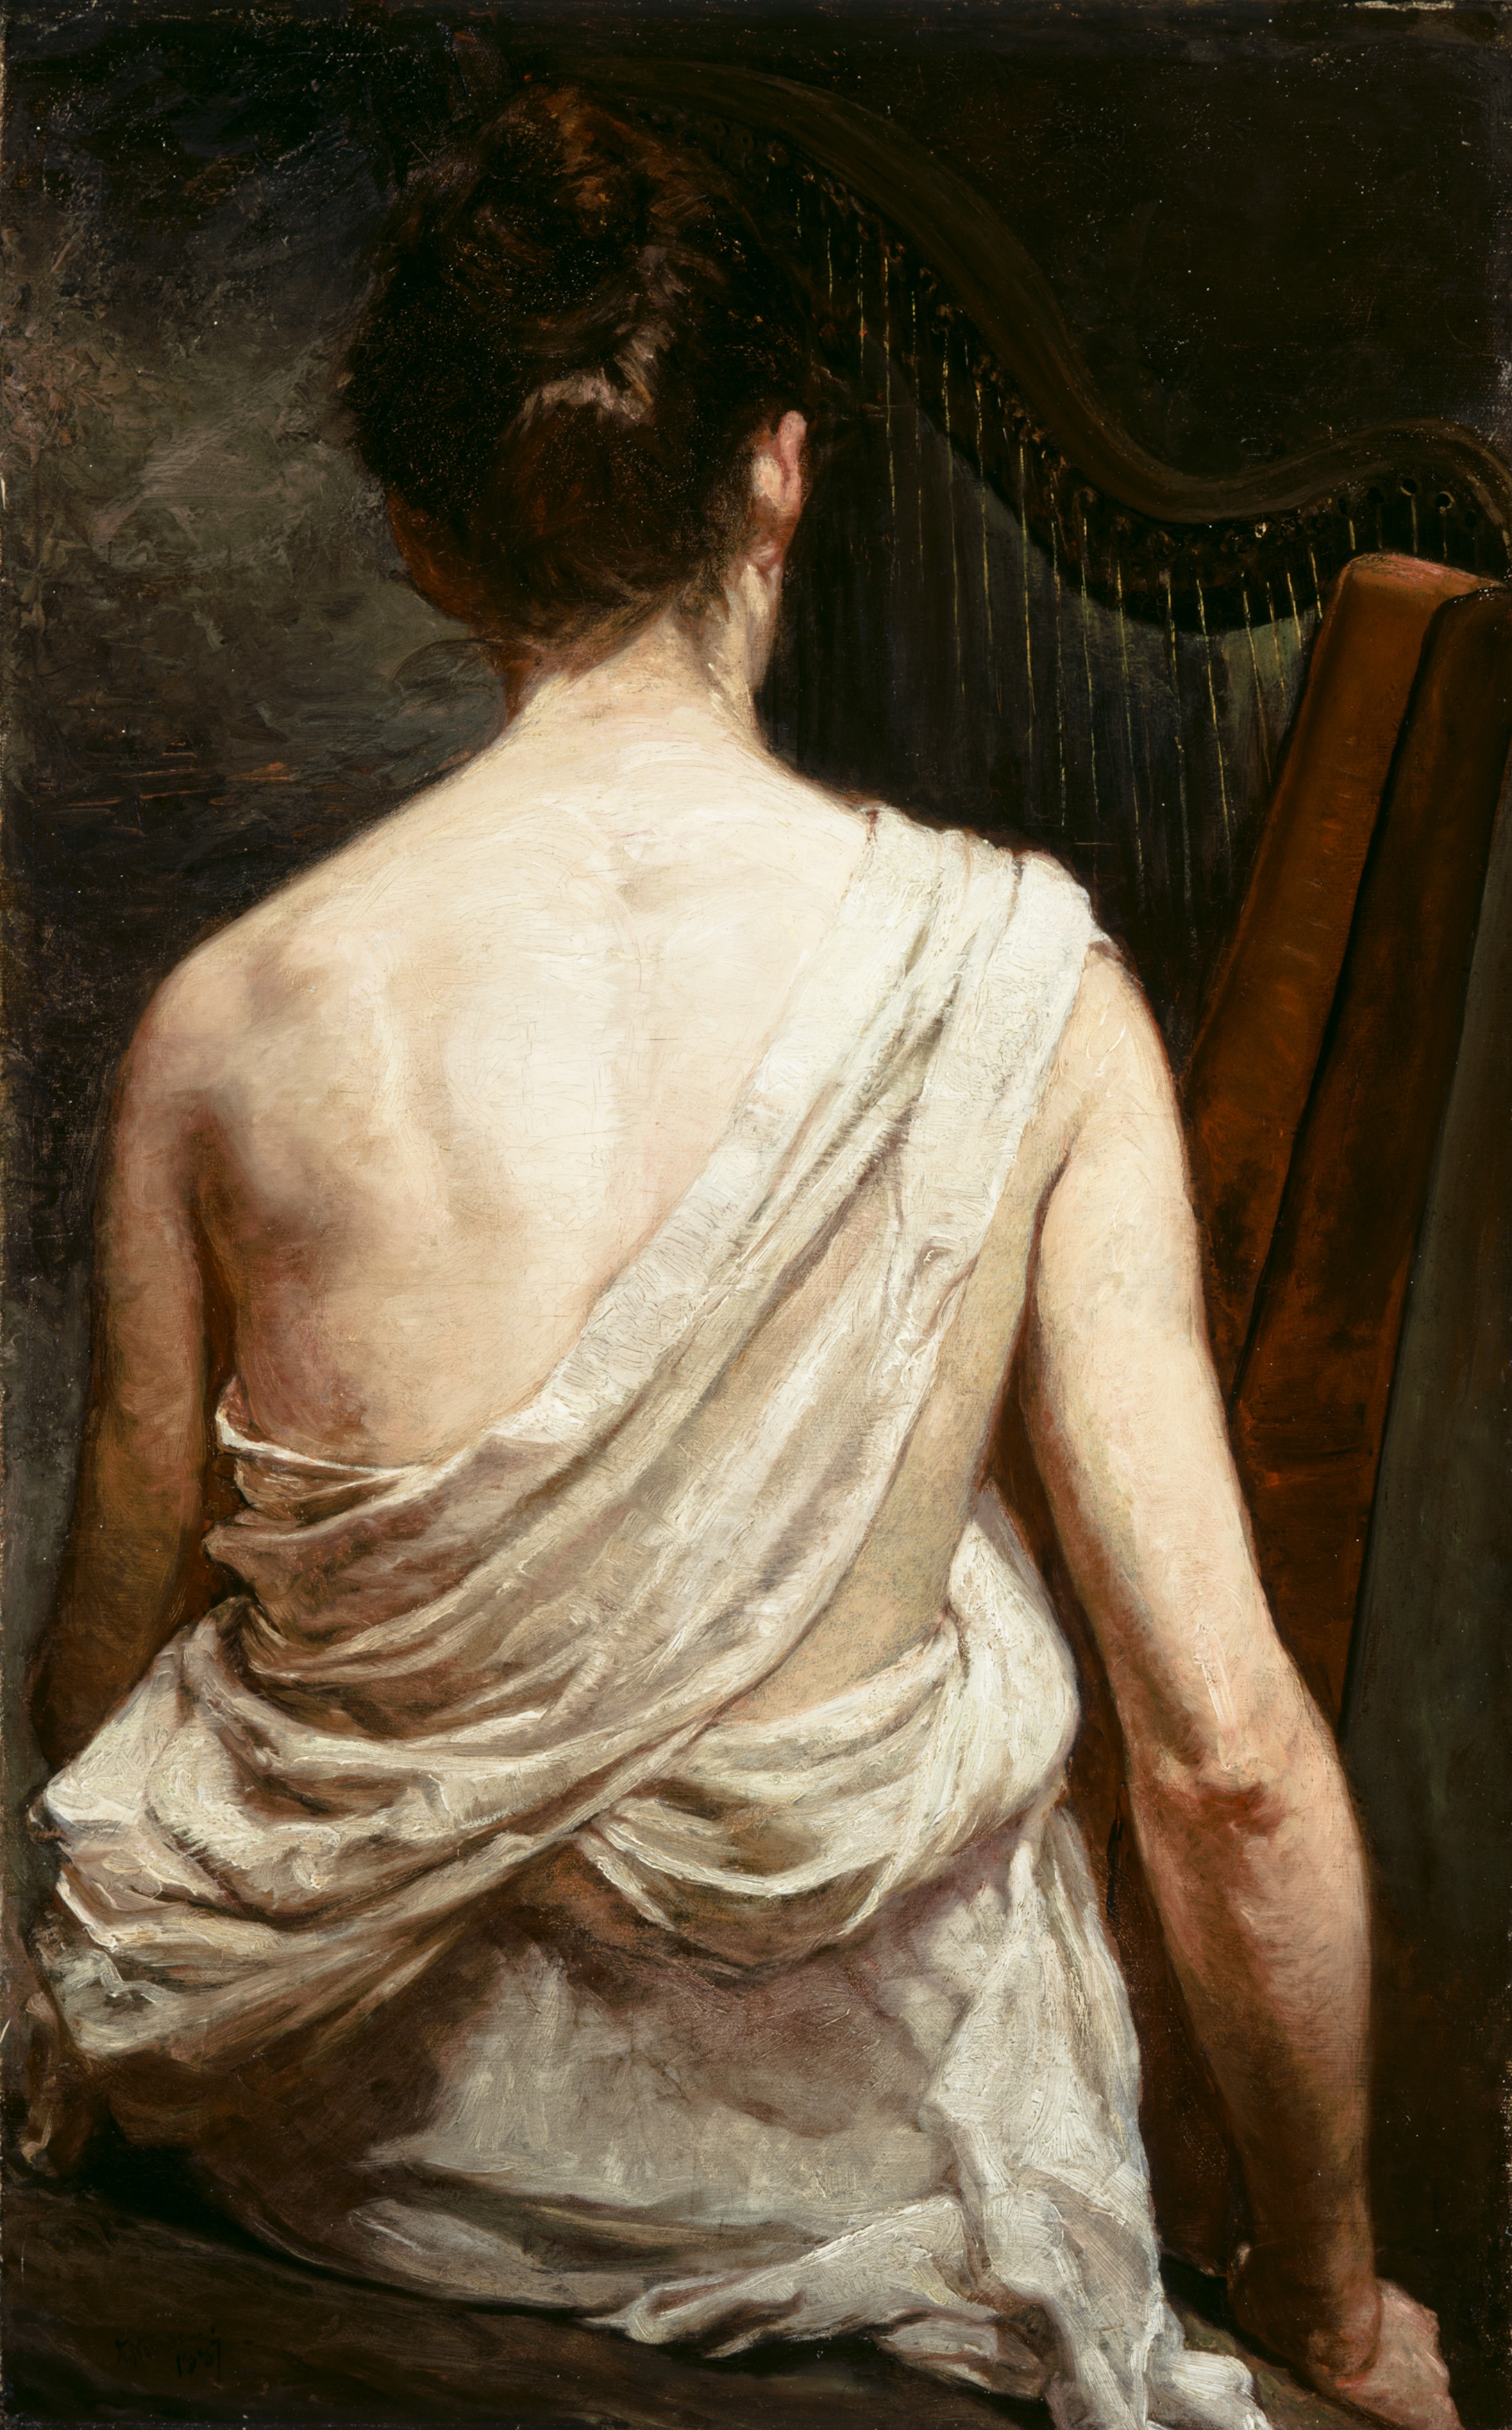 Arplı Kadın by Elizabeth Nourse - 1887 